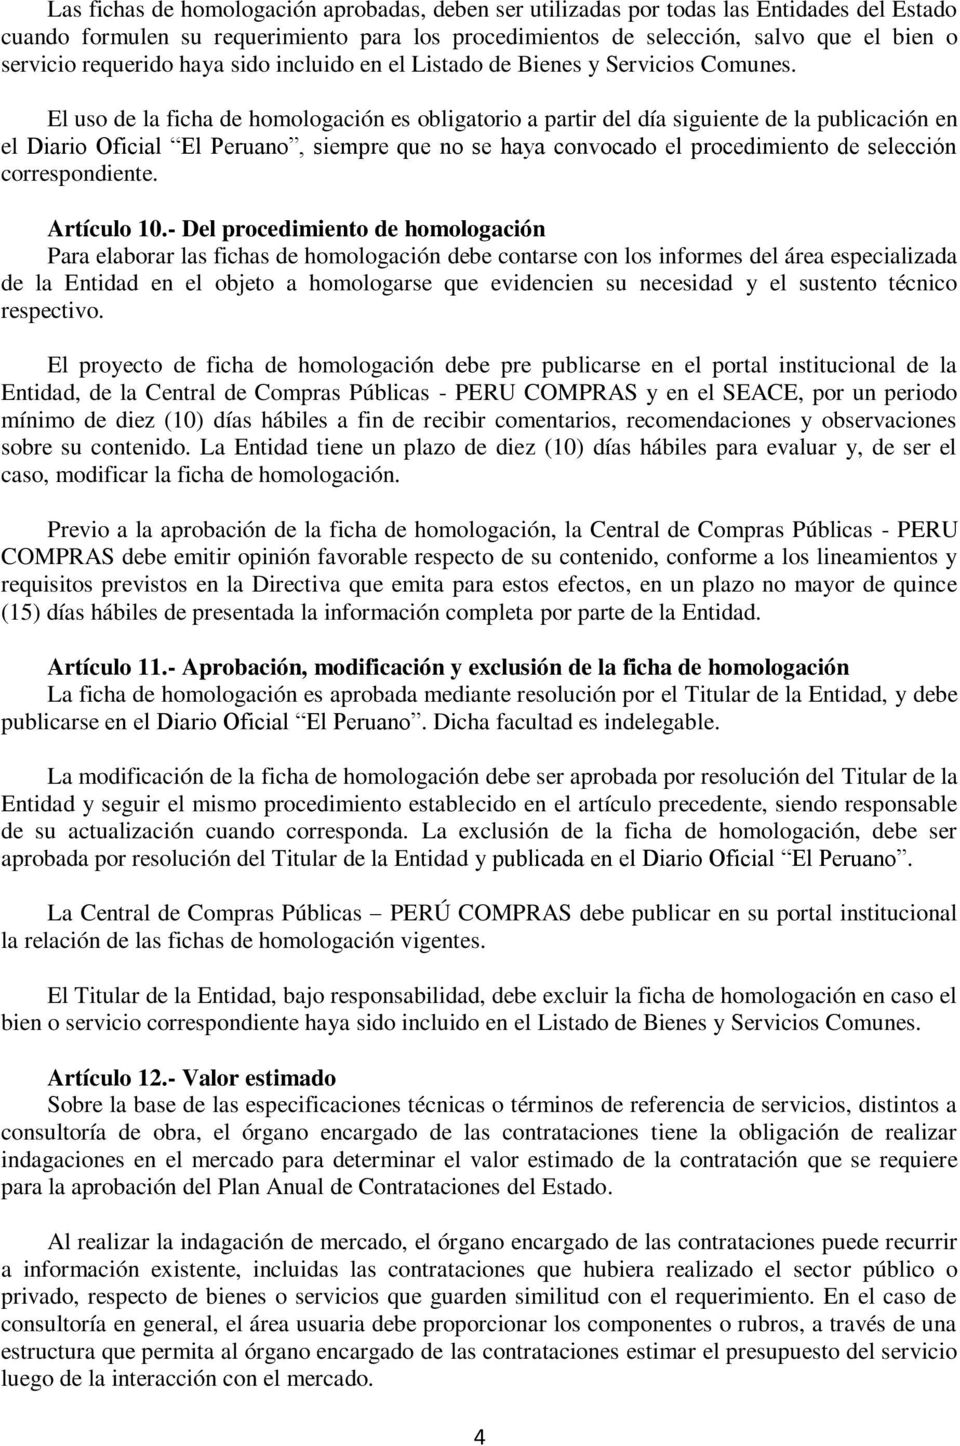 El uso de la ficha de homologación es obligatorio a partir del día siguiente de la publicación en el Diario Oficial El Peruano, siempre que no se haya convocado el procedimiento de selección